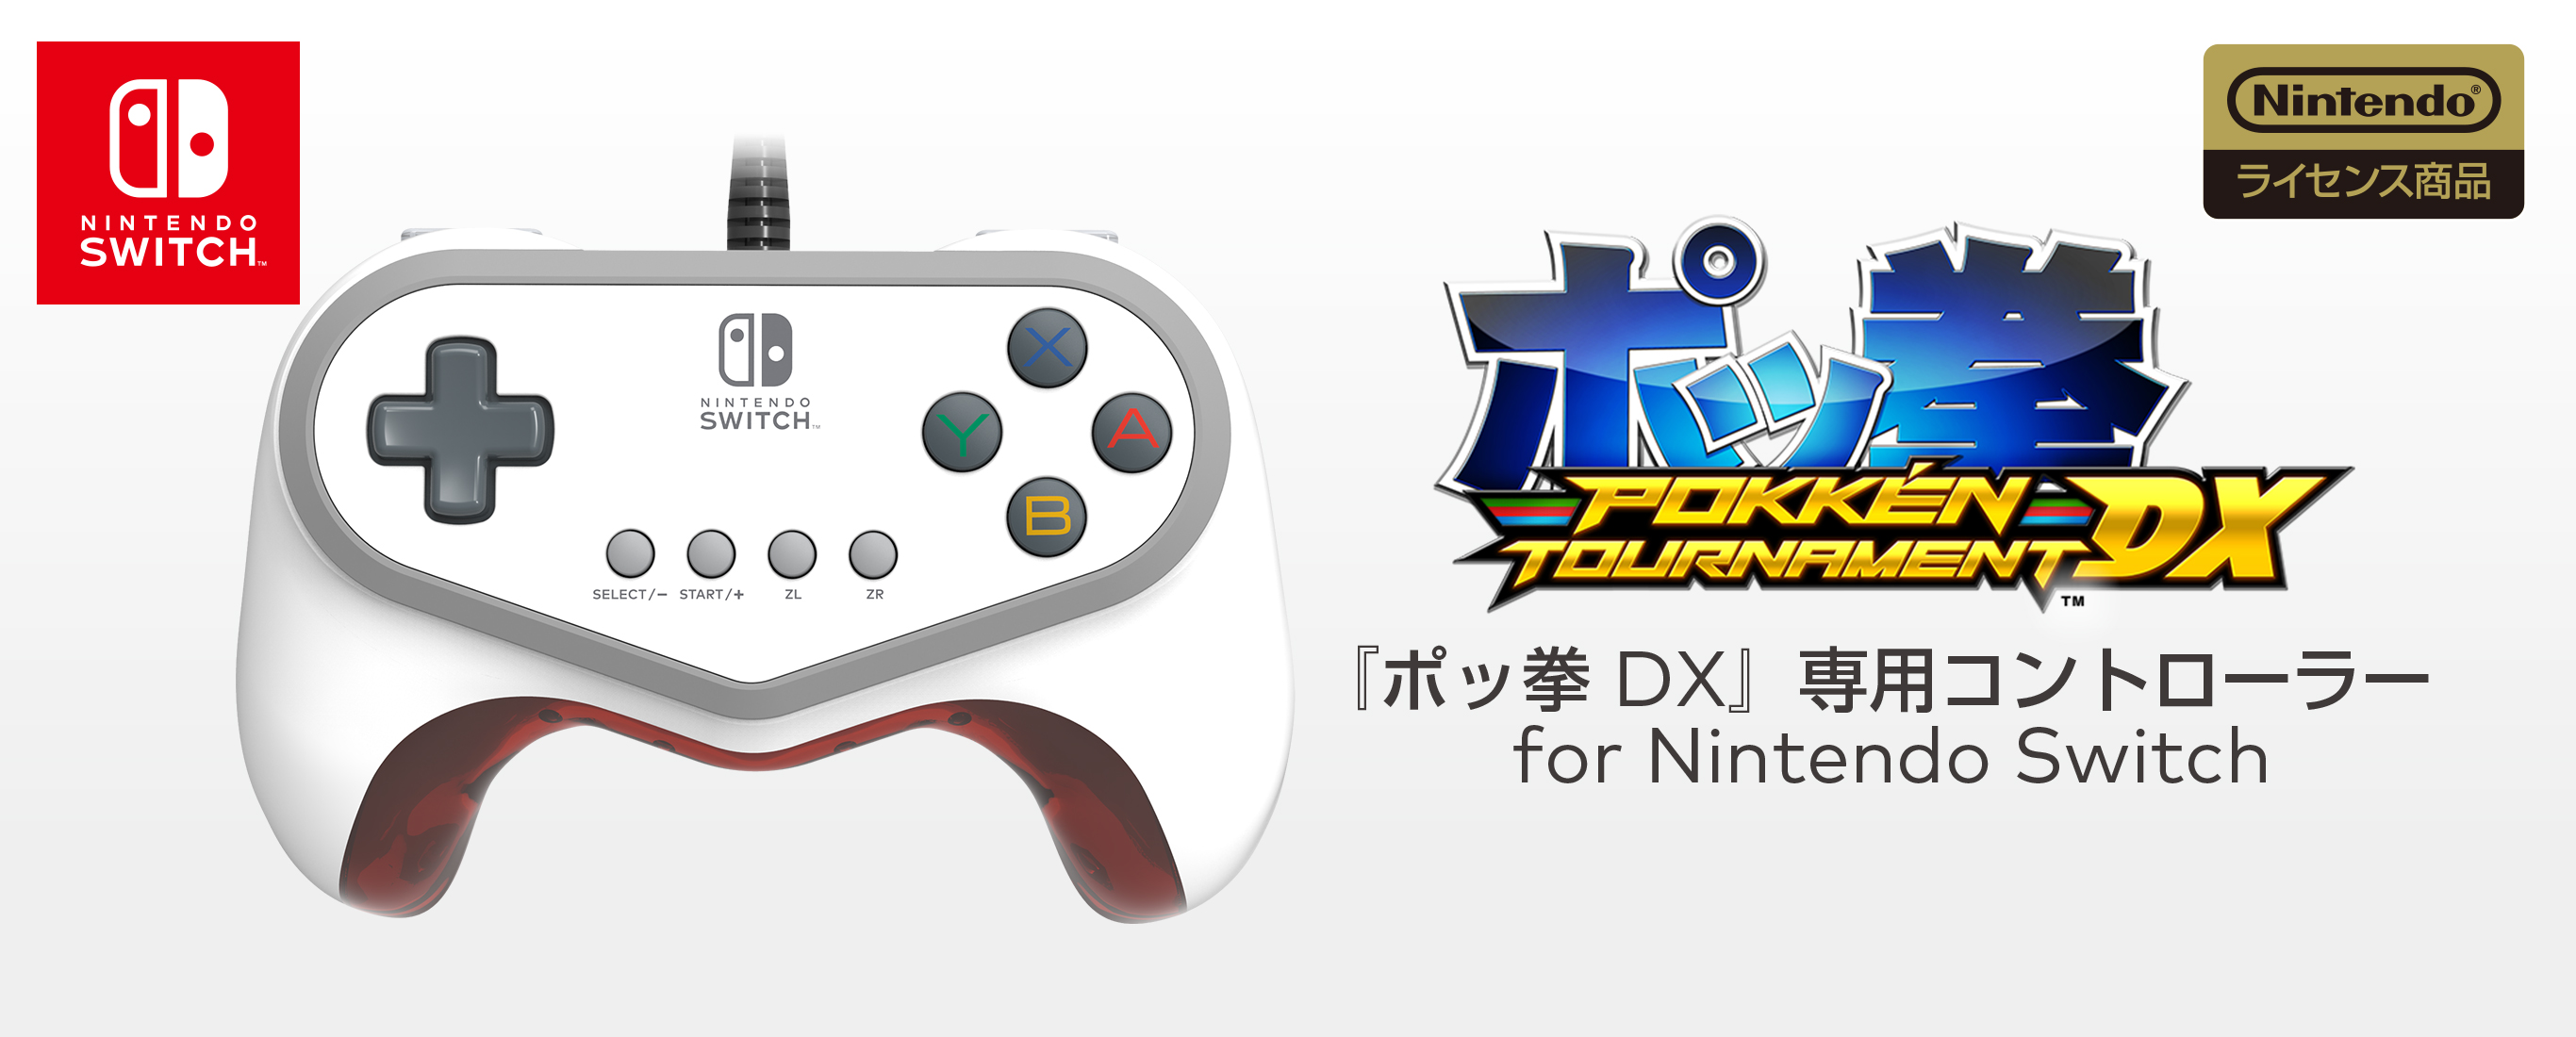 株式会社 HORI | 『ポッ拳 DX』専用コントローラー for Nintendo Switch